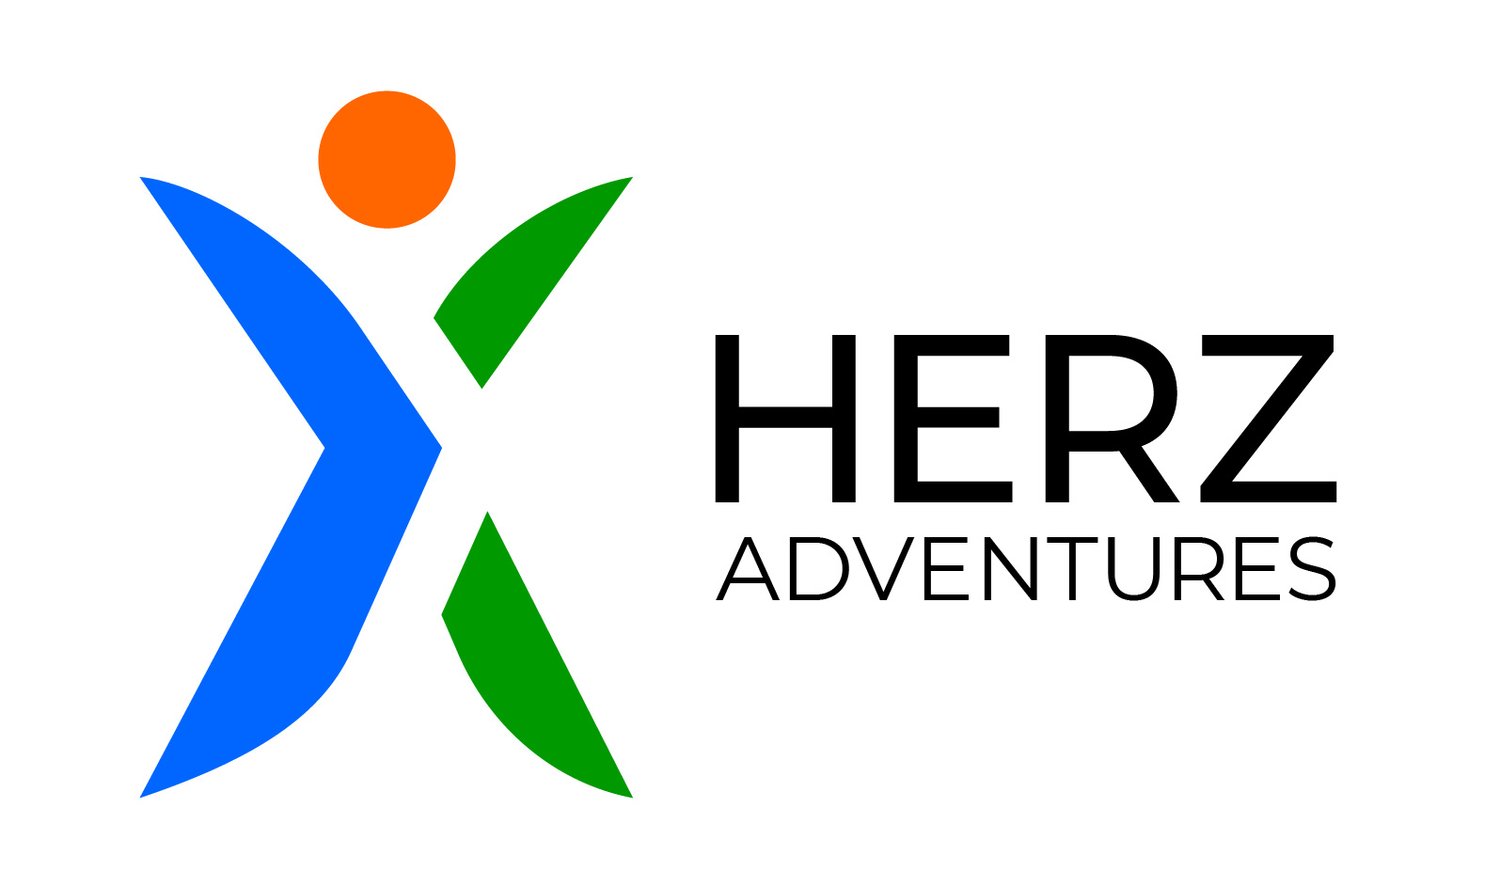 HERZ Adventures